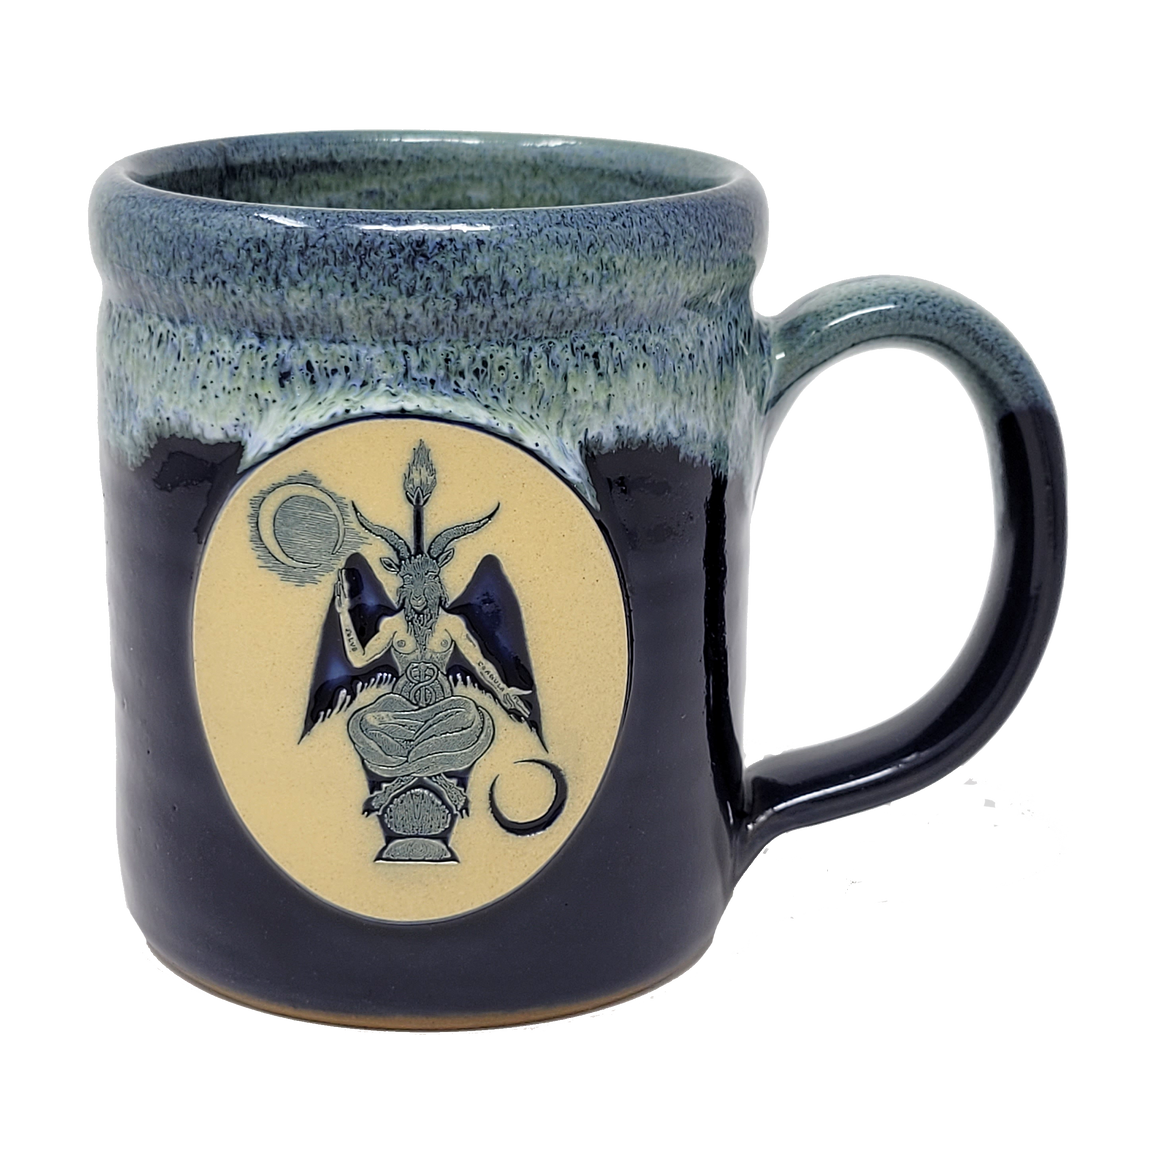 Baphomet Mug by Bill Crisafi